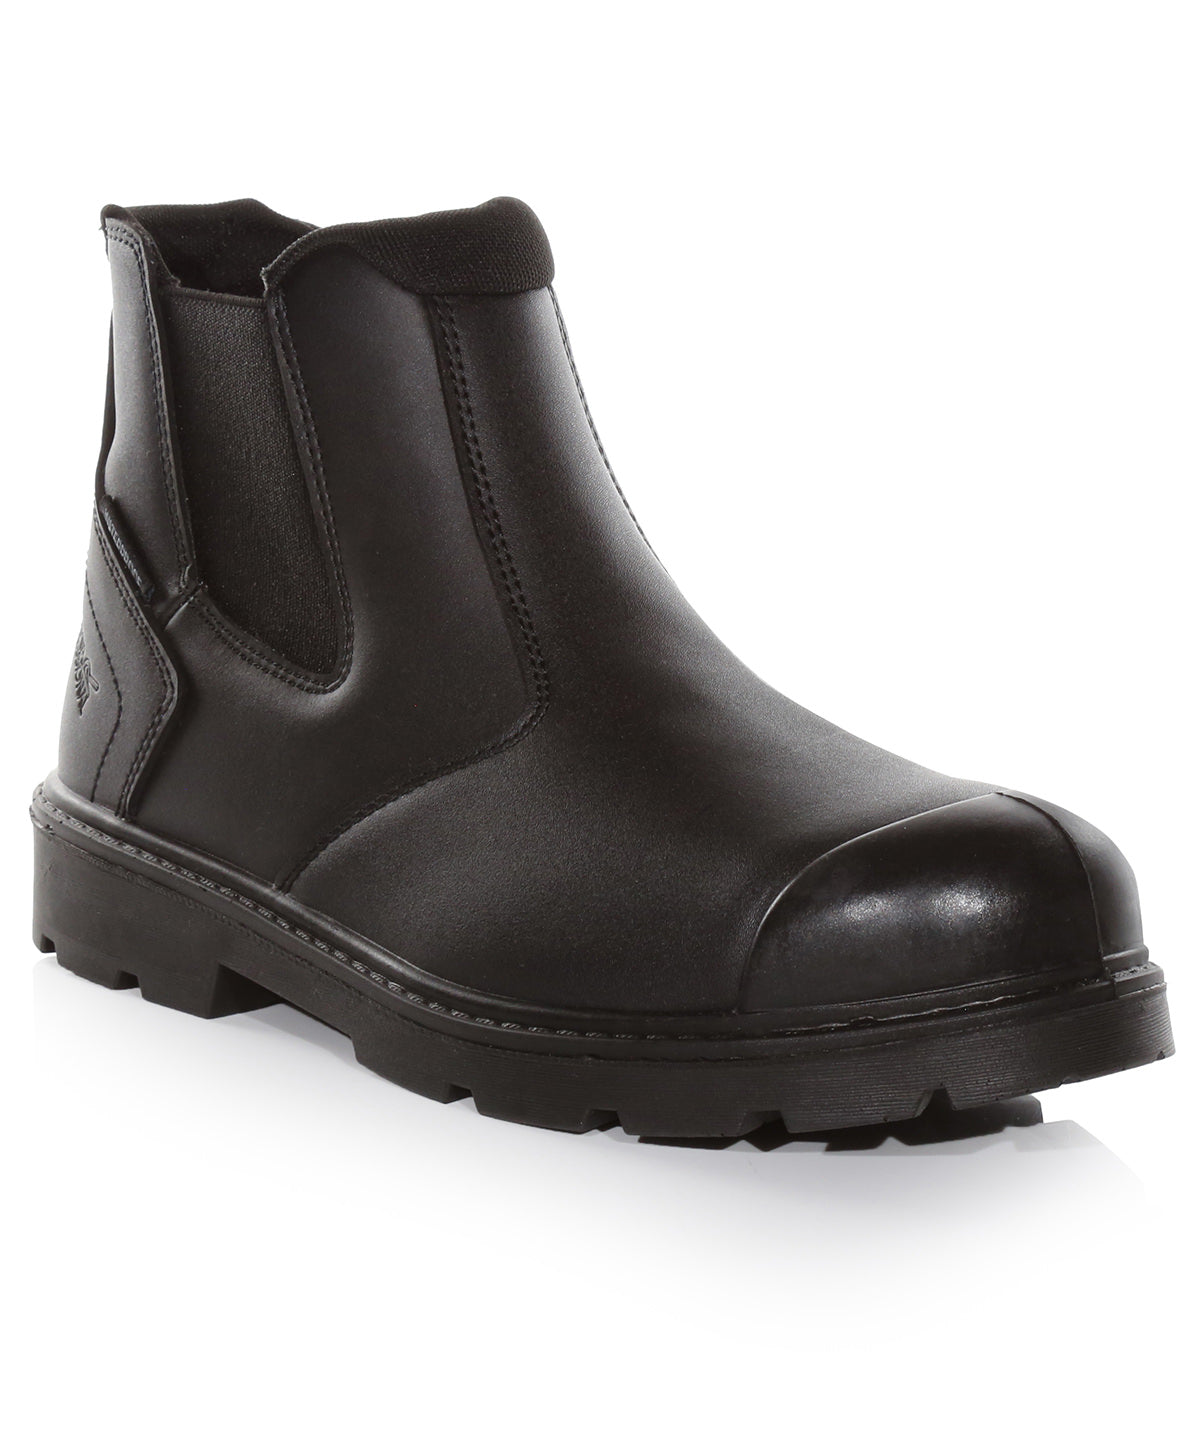 Stígvél - Waterproof S3 Dealer Boots